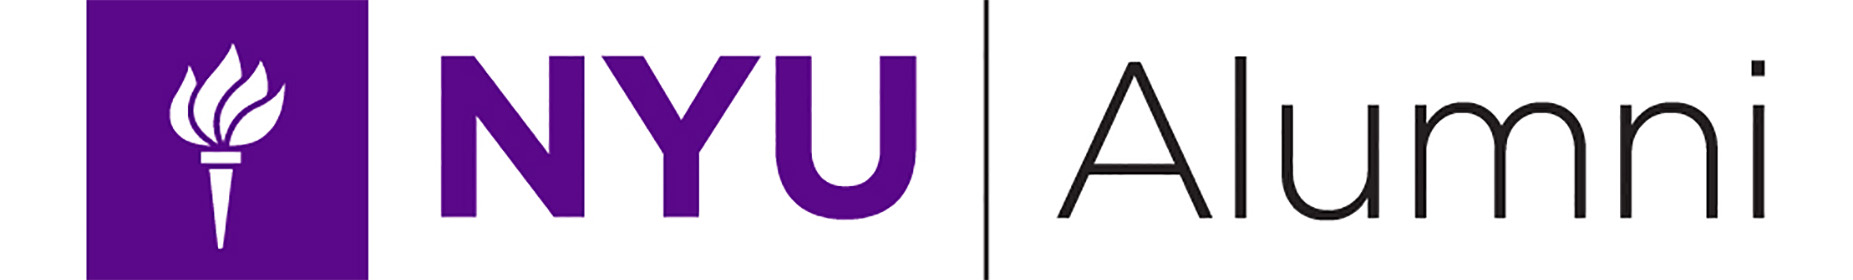 NYU alumni logo